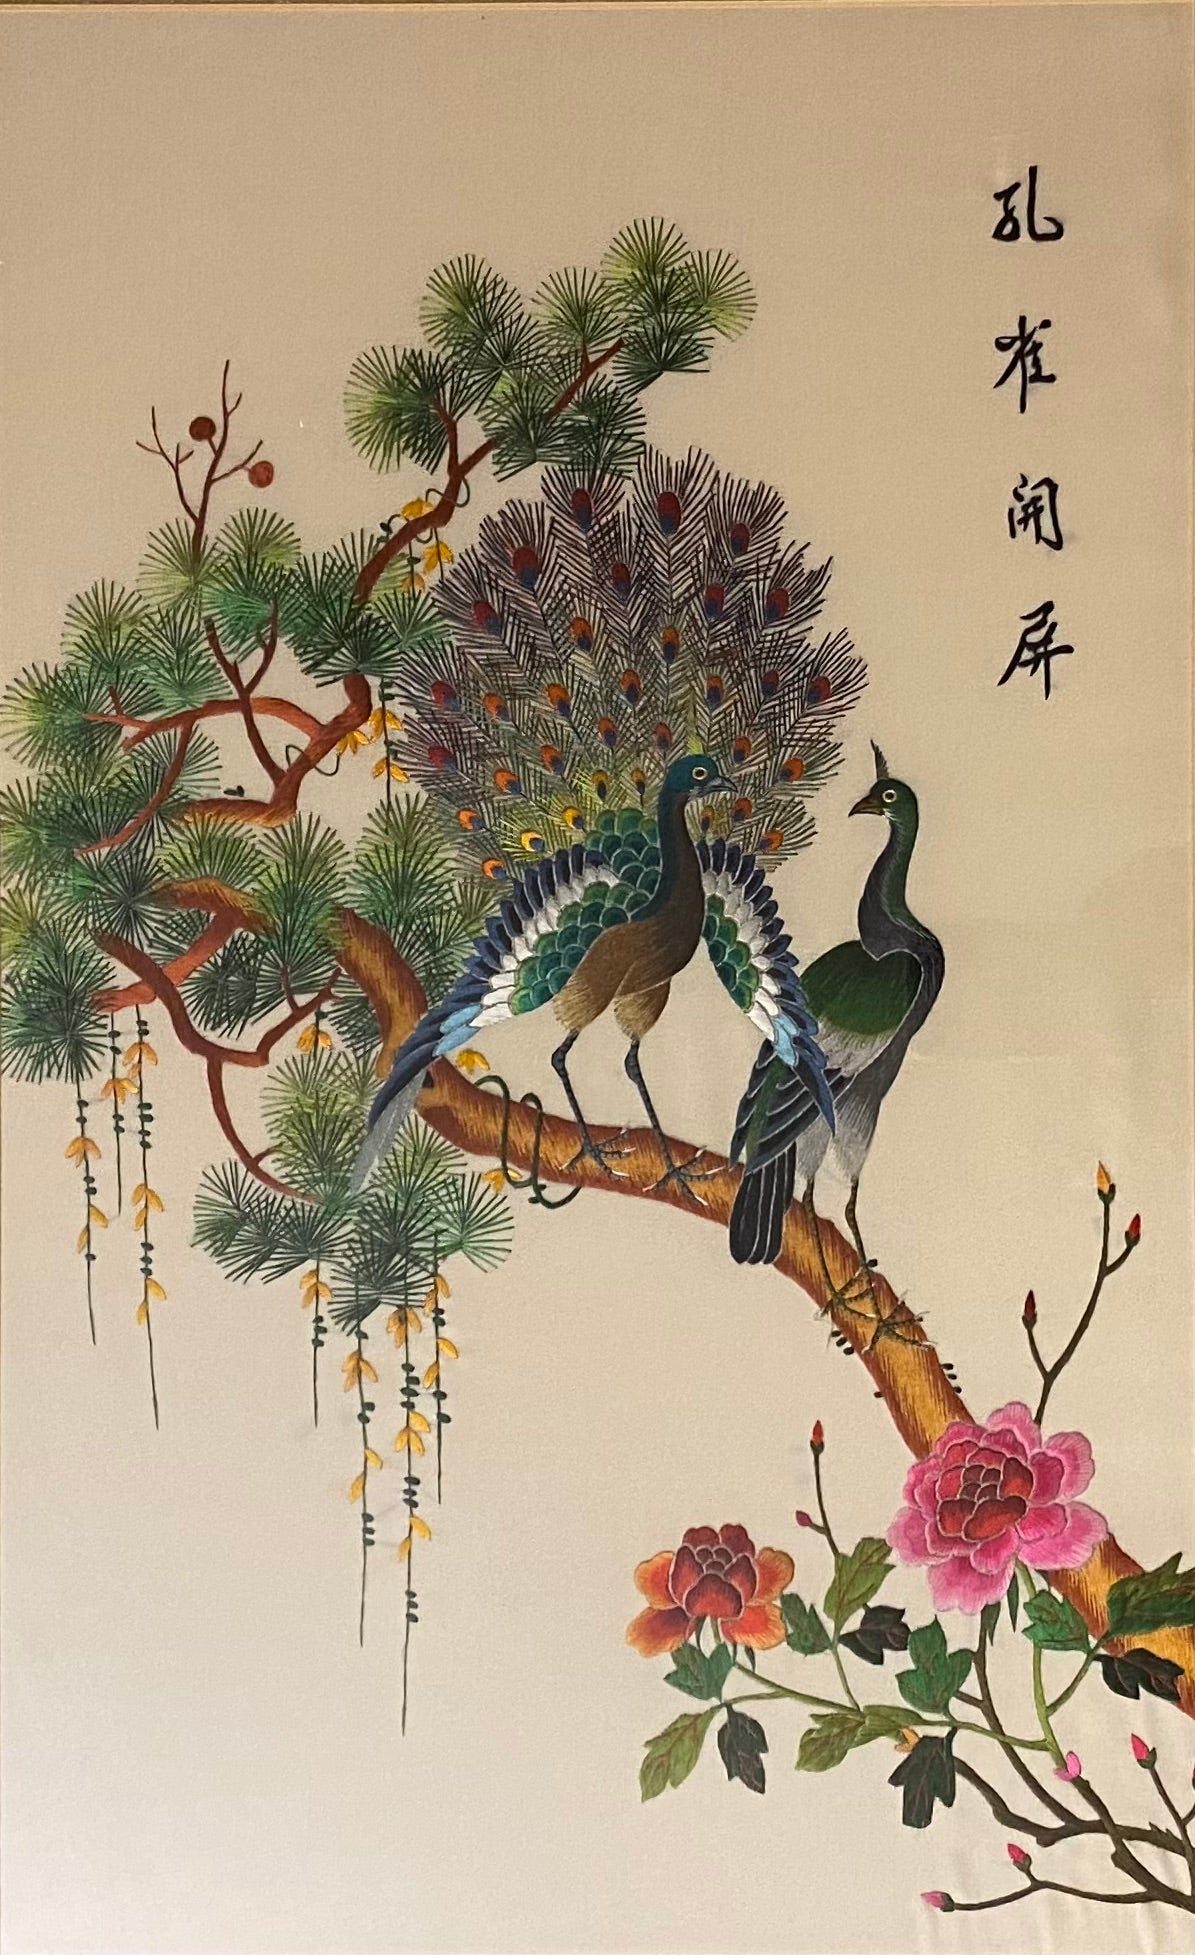 Original signiertes Kunstwerk der Suzhou-Stickerei und ihrer Bedeutung für die chinesische Kultur als Kunstform. 

Atemberaubend schöne und traditionelle Arbeit in dieser Vintage-Seidenfaden-Wandkunst von Flora und Fauna. Jeder Stich wird in